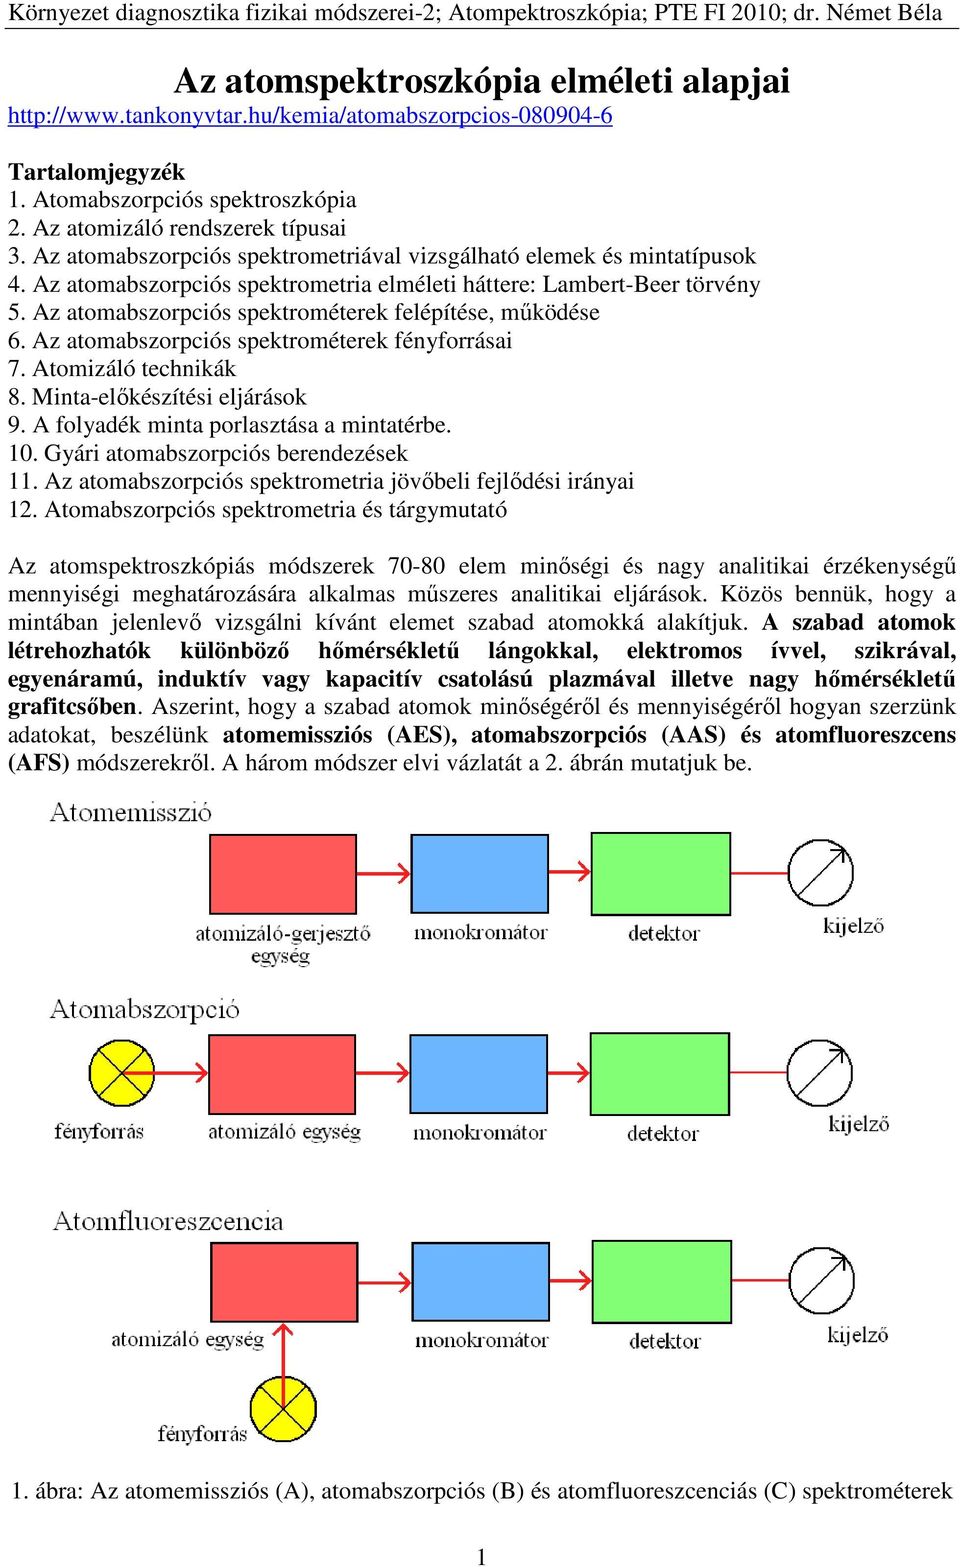 Az atomspektroszkópia elméleti alapjai - PDF Ingyenes letöltés